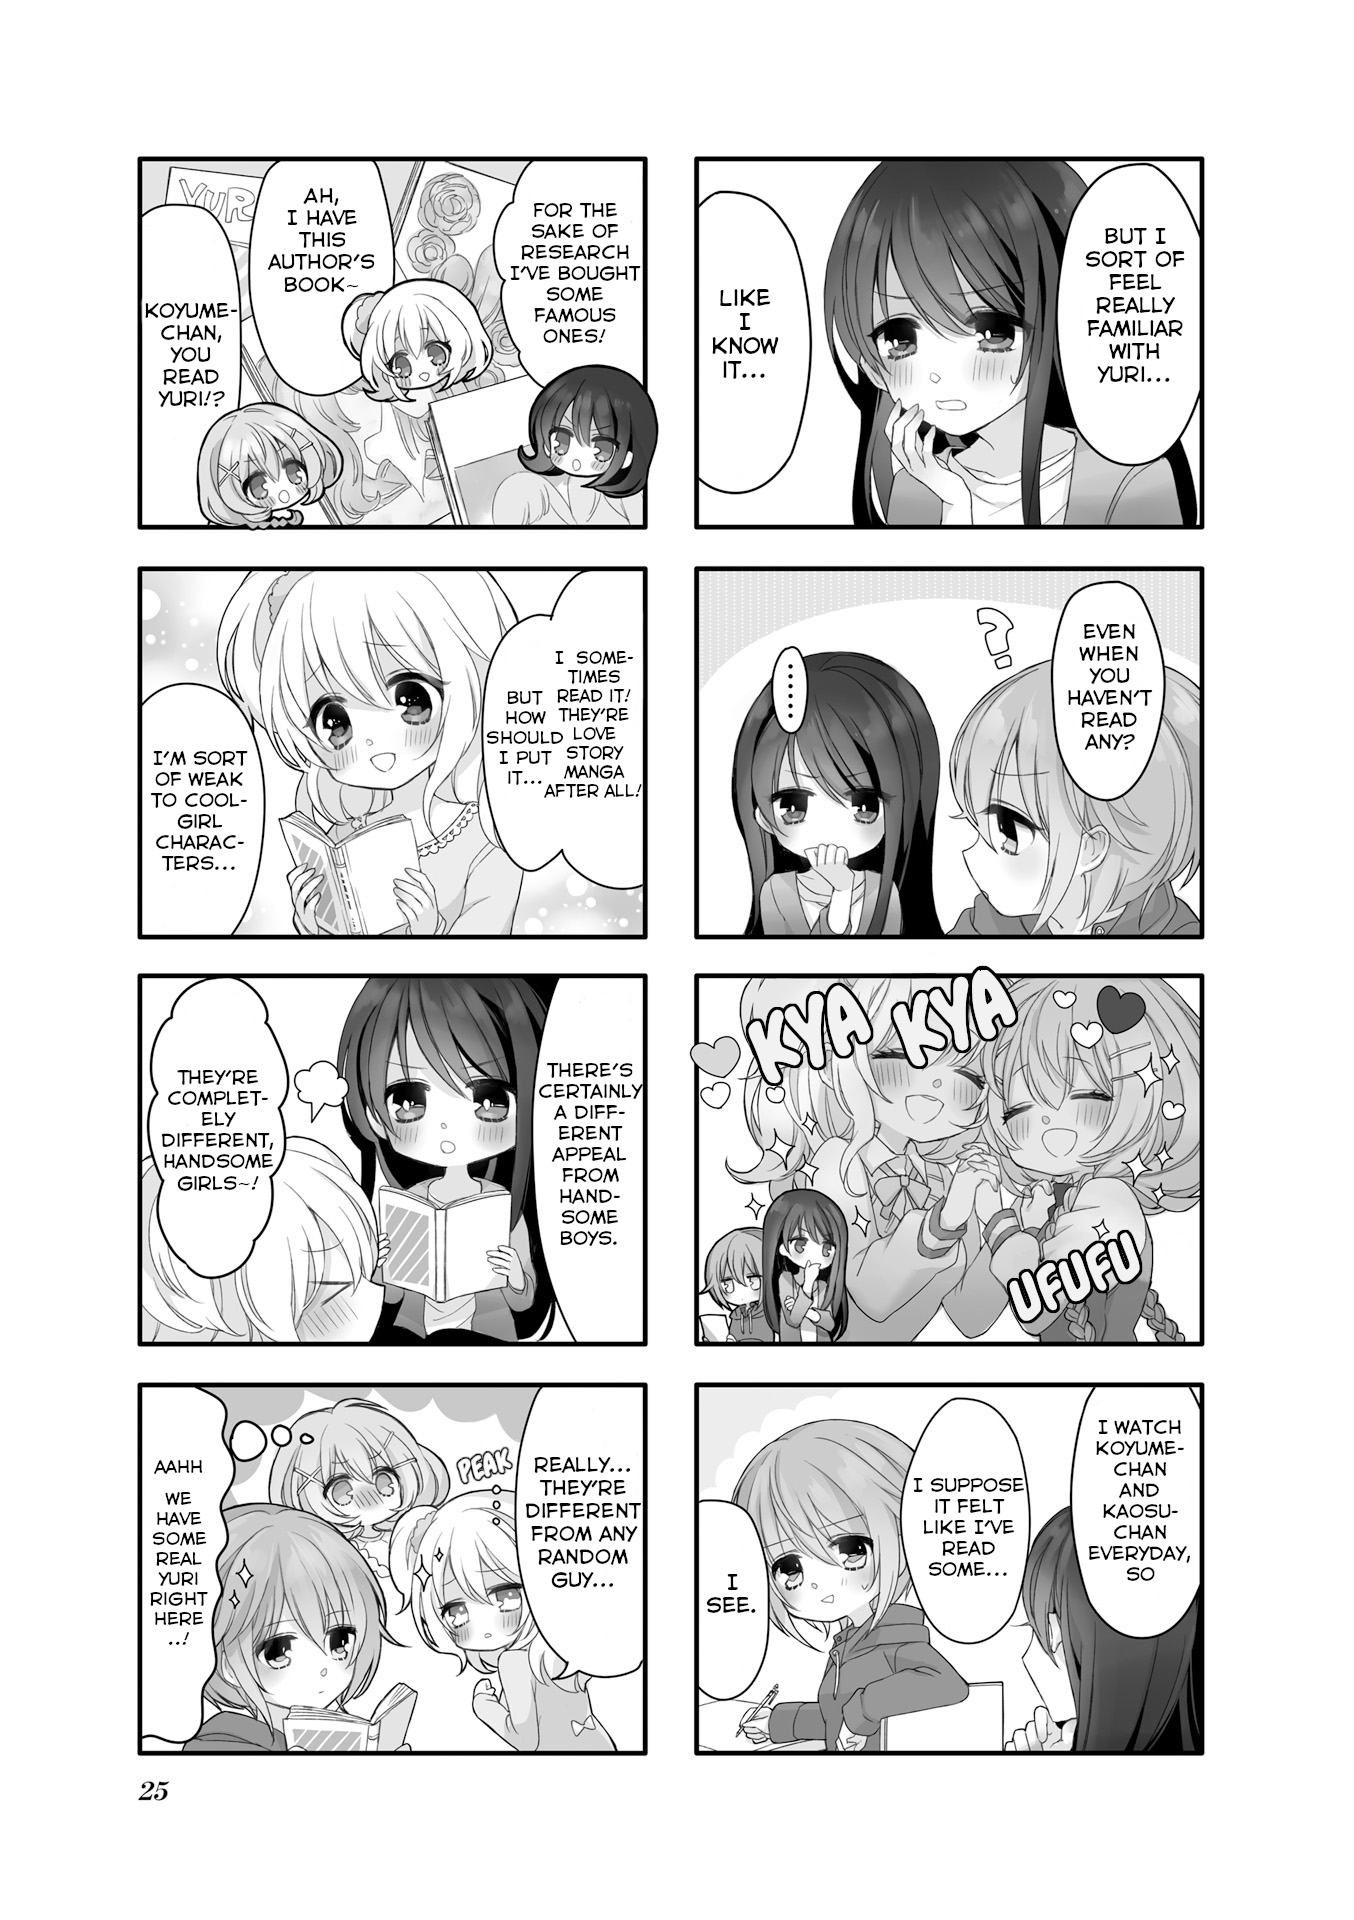 Comic Girls Anthology Vol.1 Chapter 3: Yuri Manga Challenge! - Picture 3